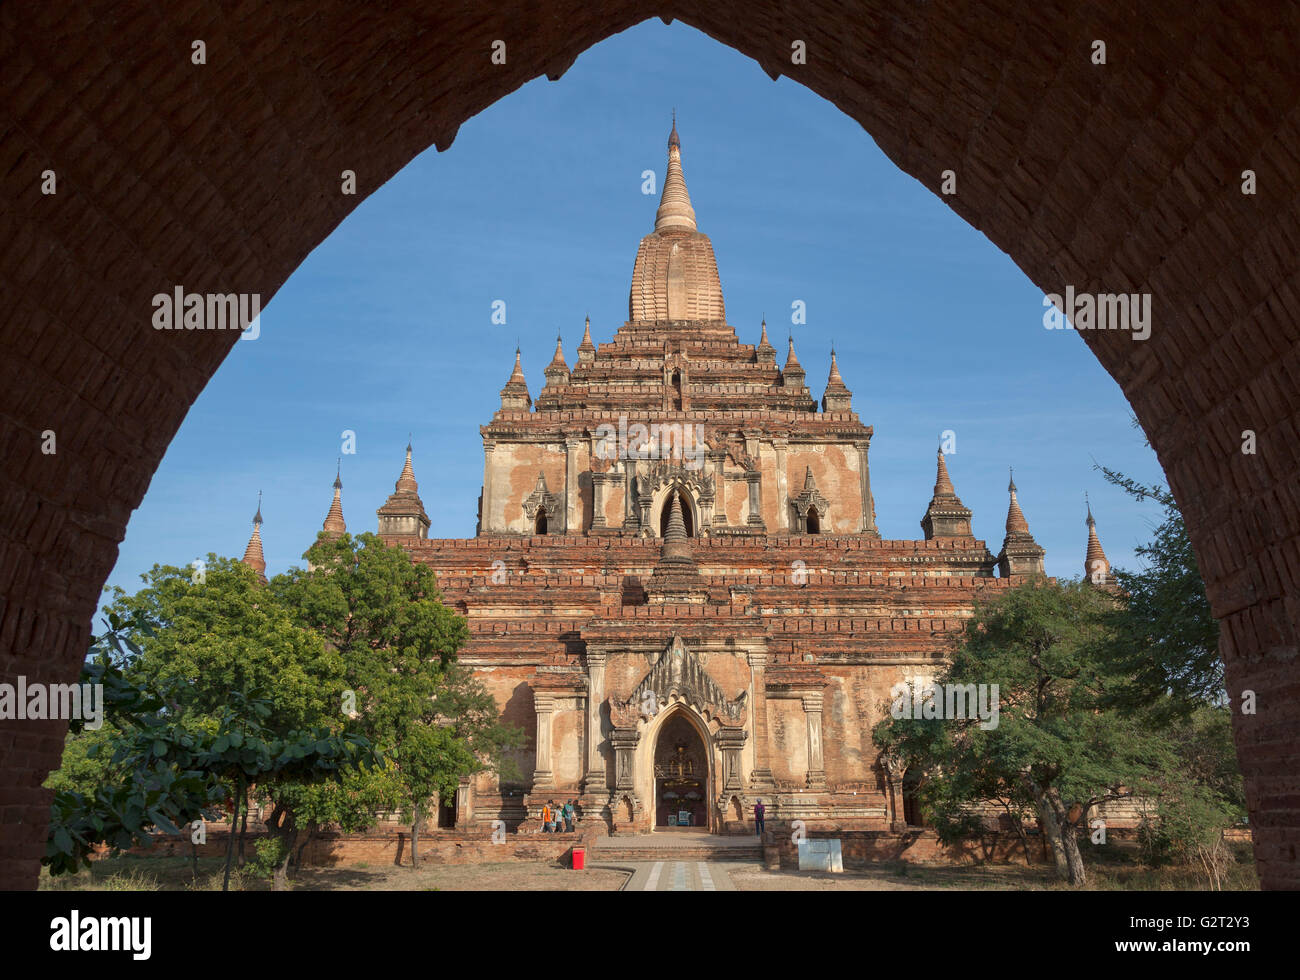 L'entrée de l'Pahto, Dhammayangyi à Bagan (Myanmar). Ce temple bouddhiste fortifié remonte au XII ème siècle. Banque D'Images